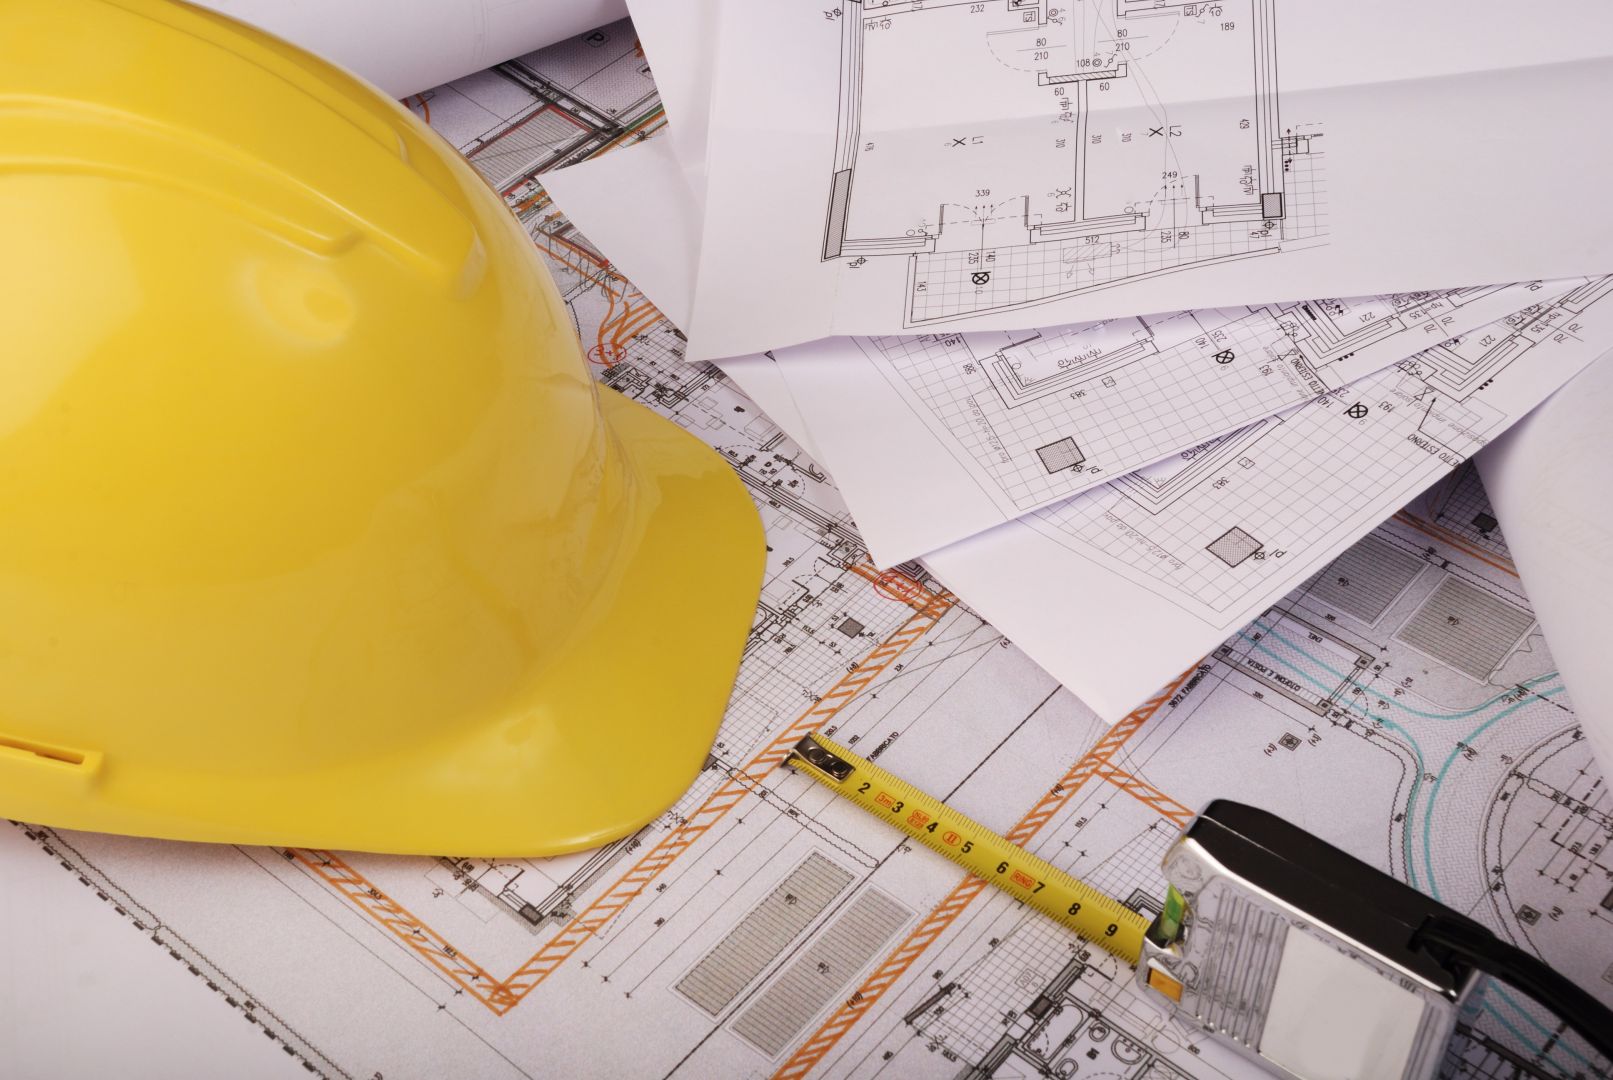 Poptávka na projektová dokumentace pro stavbu rodinného domu (Projektanti - pozemní stavby) - Chrudim